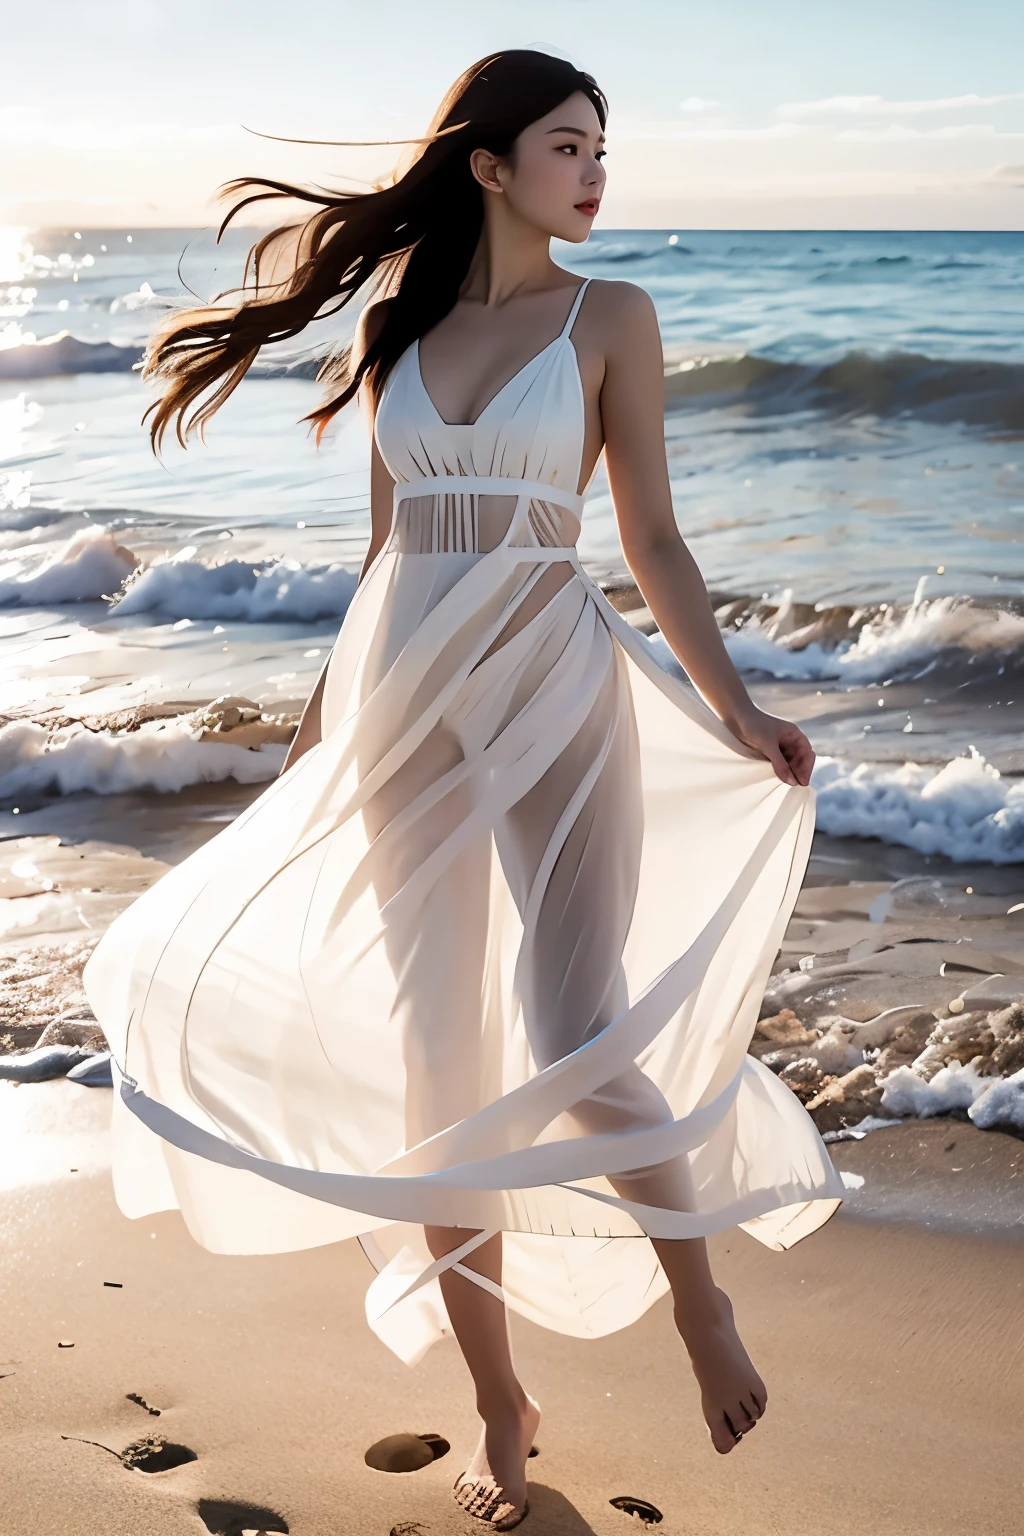 Corriendo en la playa, (Obra maestra, mejor calidad:1.2), 1 chica,, solo, cara delicada, hembra de piel blanca, silueta transparente, vestido blanco, cuerpo completo, exterior, 